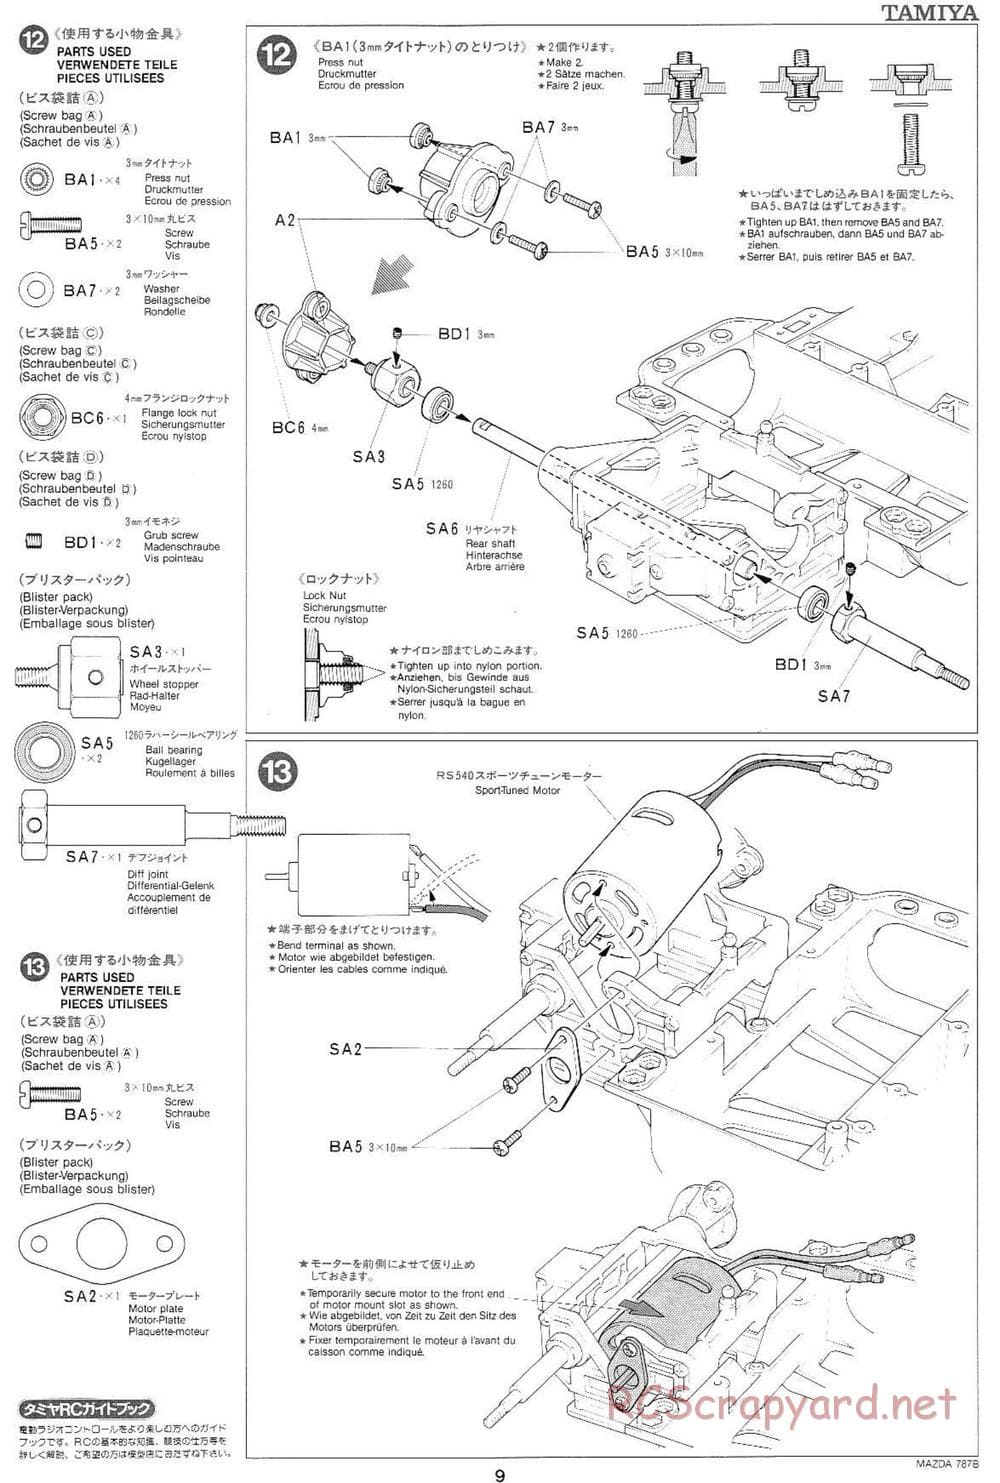 Tamiya - Mazda 787B - Group-C Chassis - Manual - Page 9